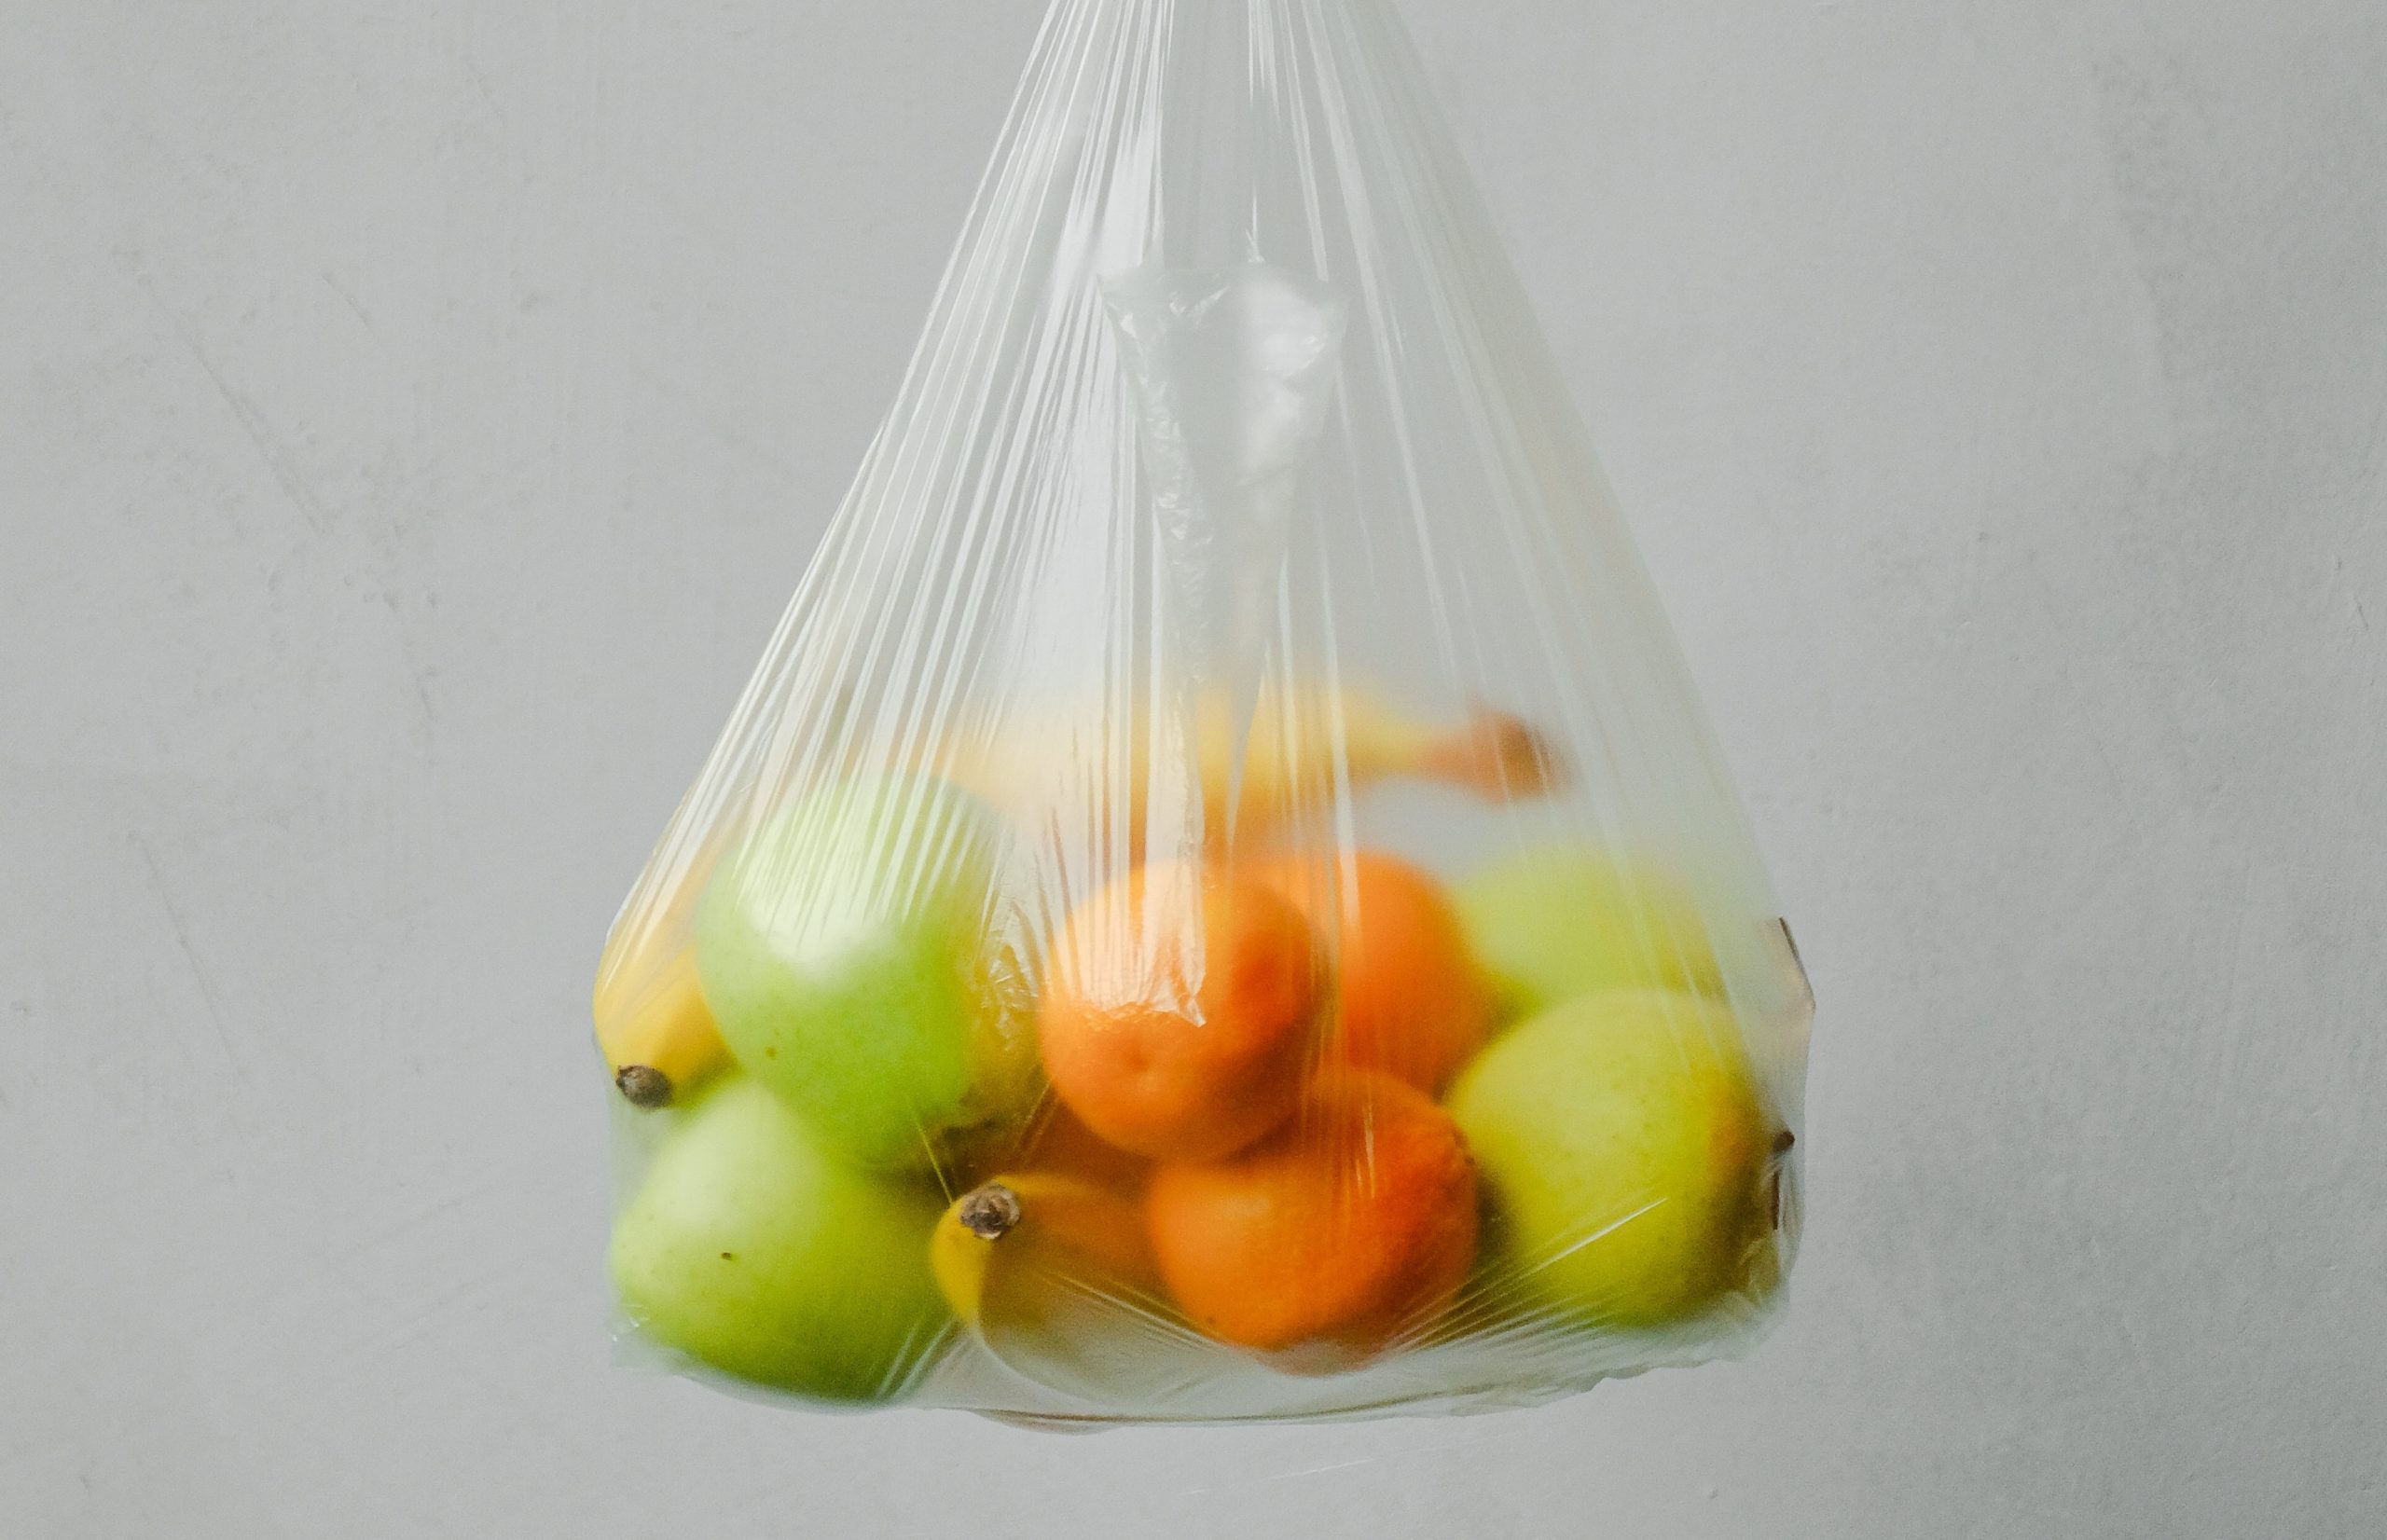 Regina bans plastic bags—sort of